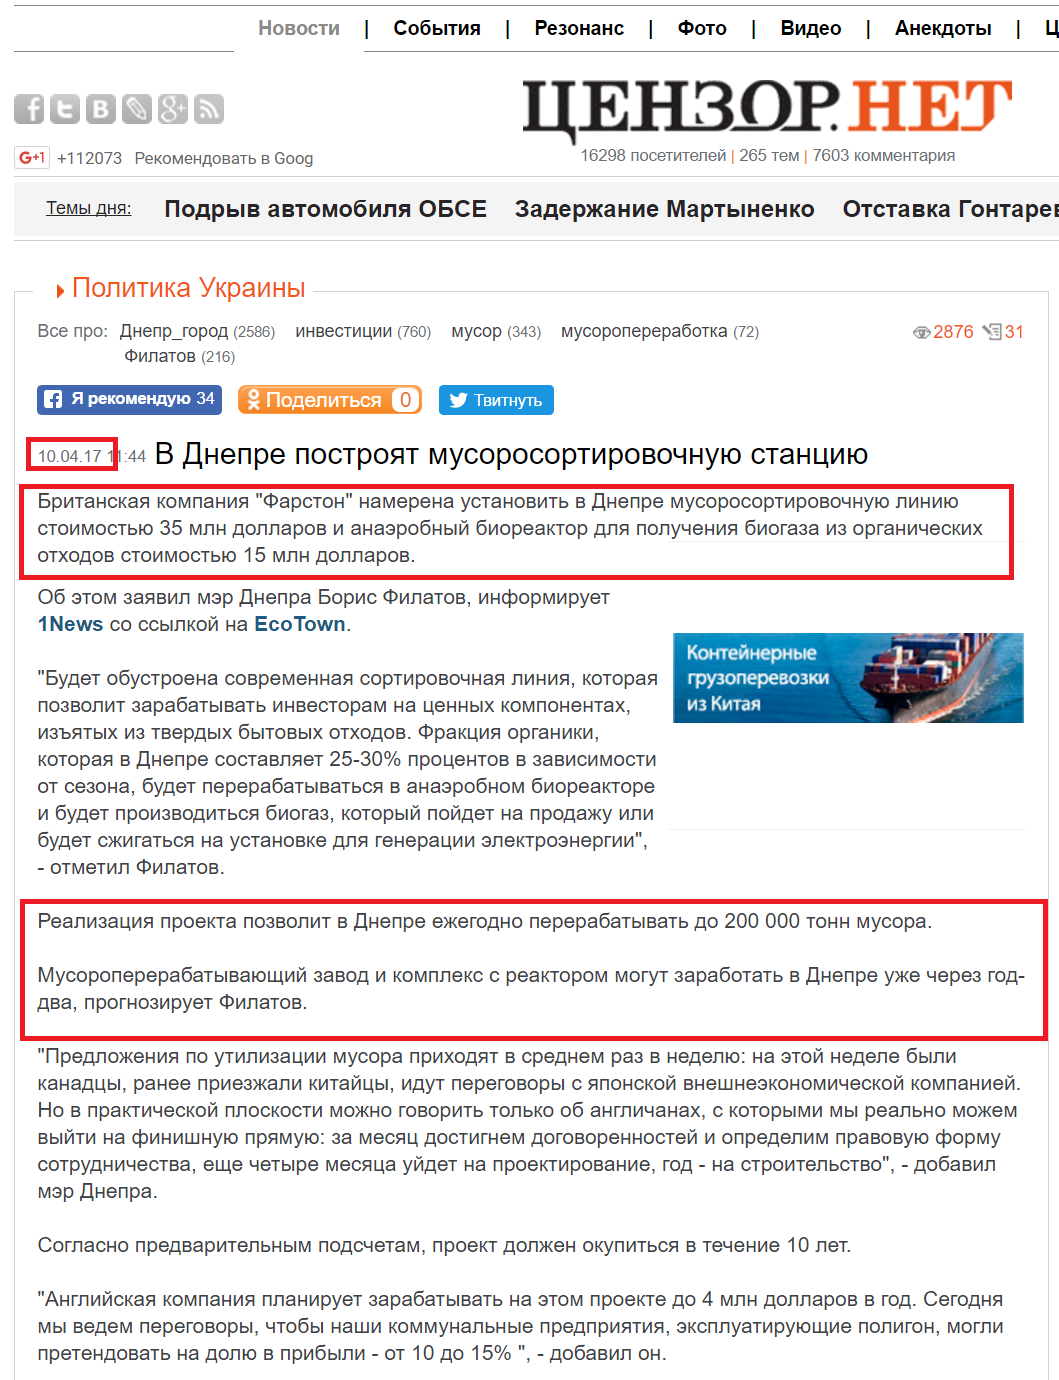 http://censor.net.ua/news/435668/v_dnepre_postroyat_musorosortirovochnuyu_stantsiyu